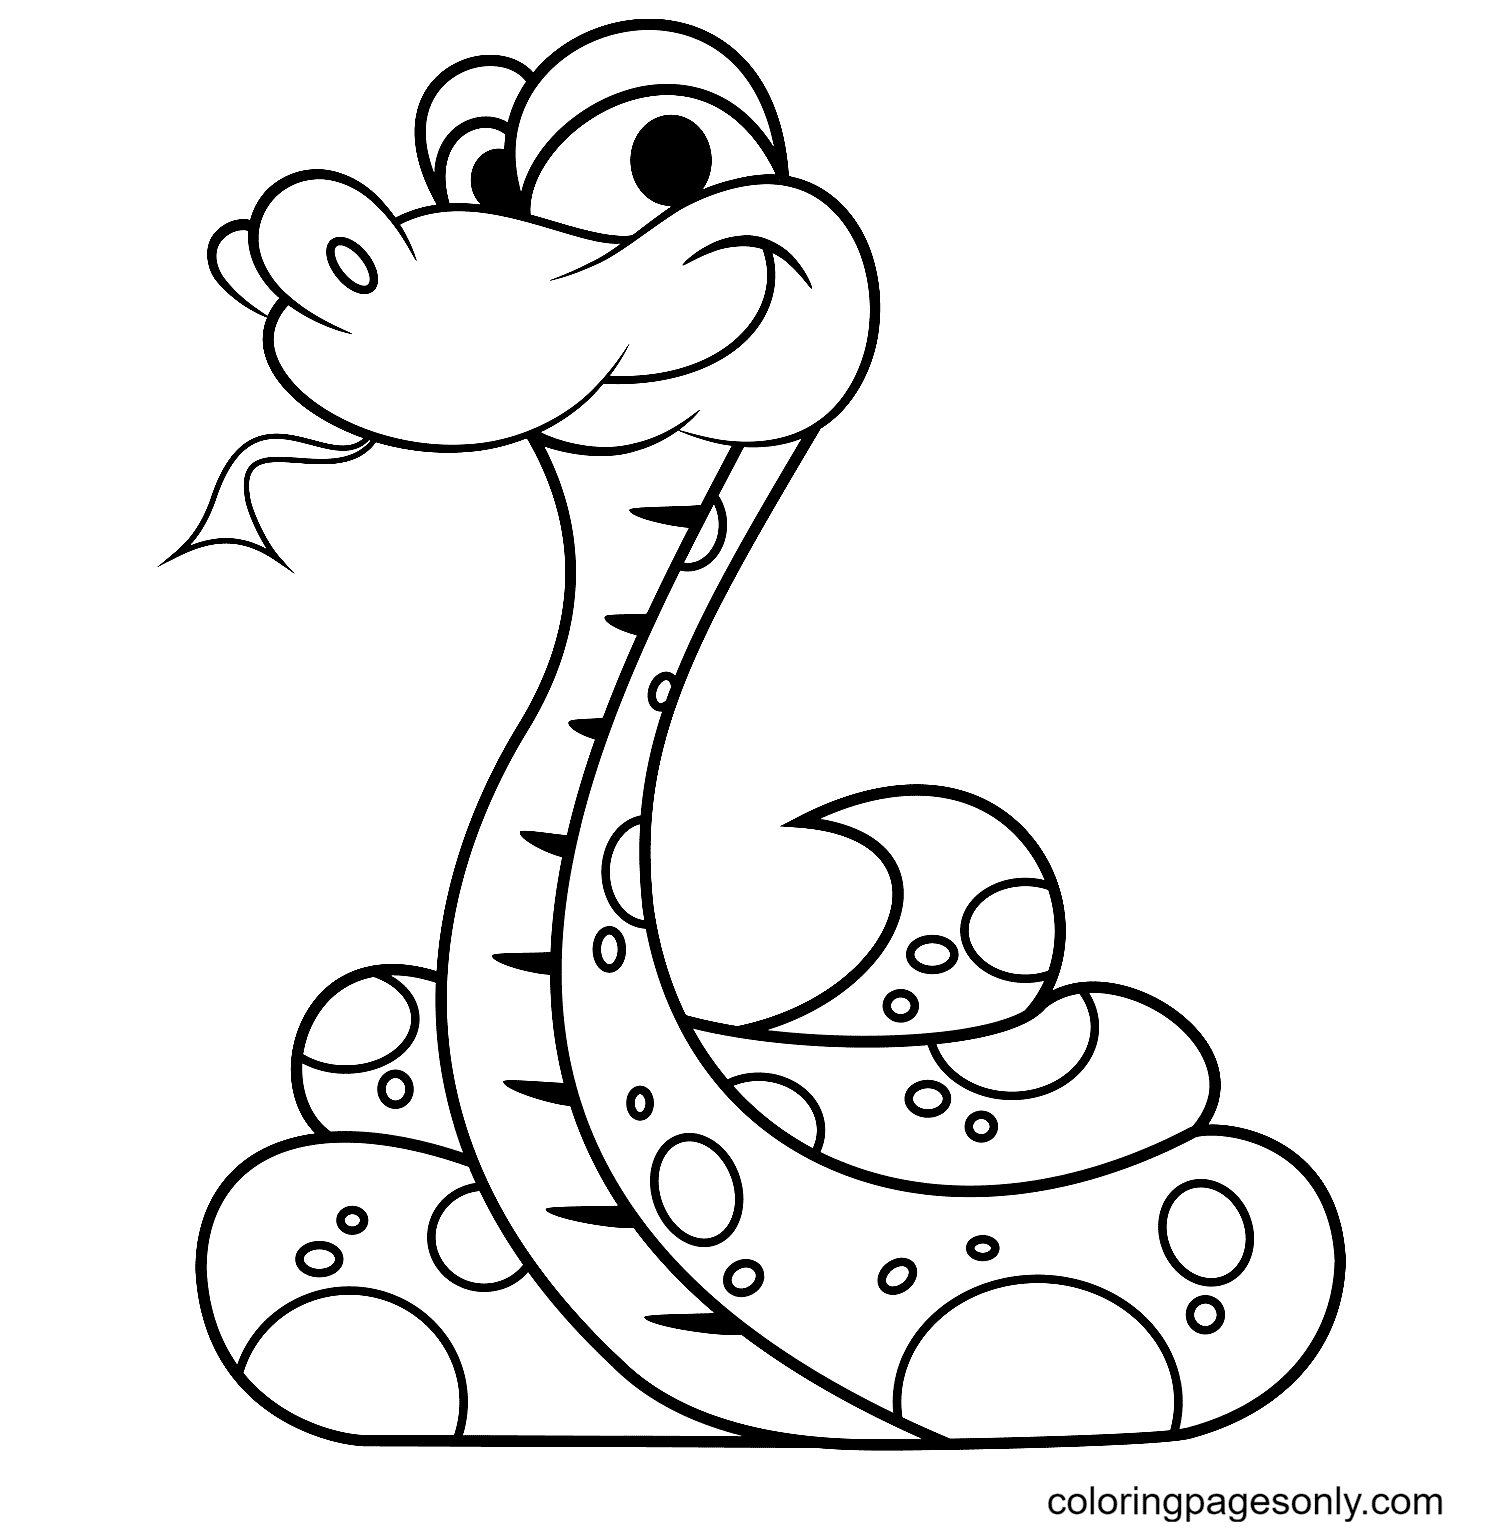 蛇的微笑蛇